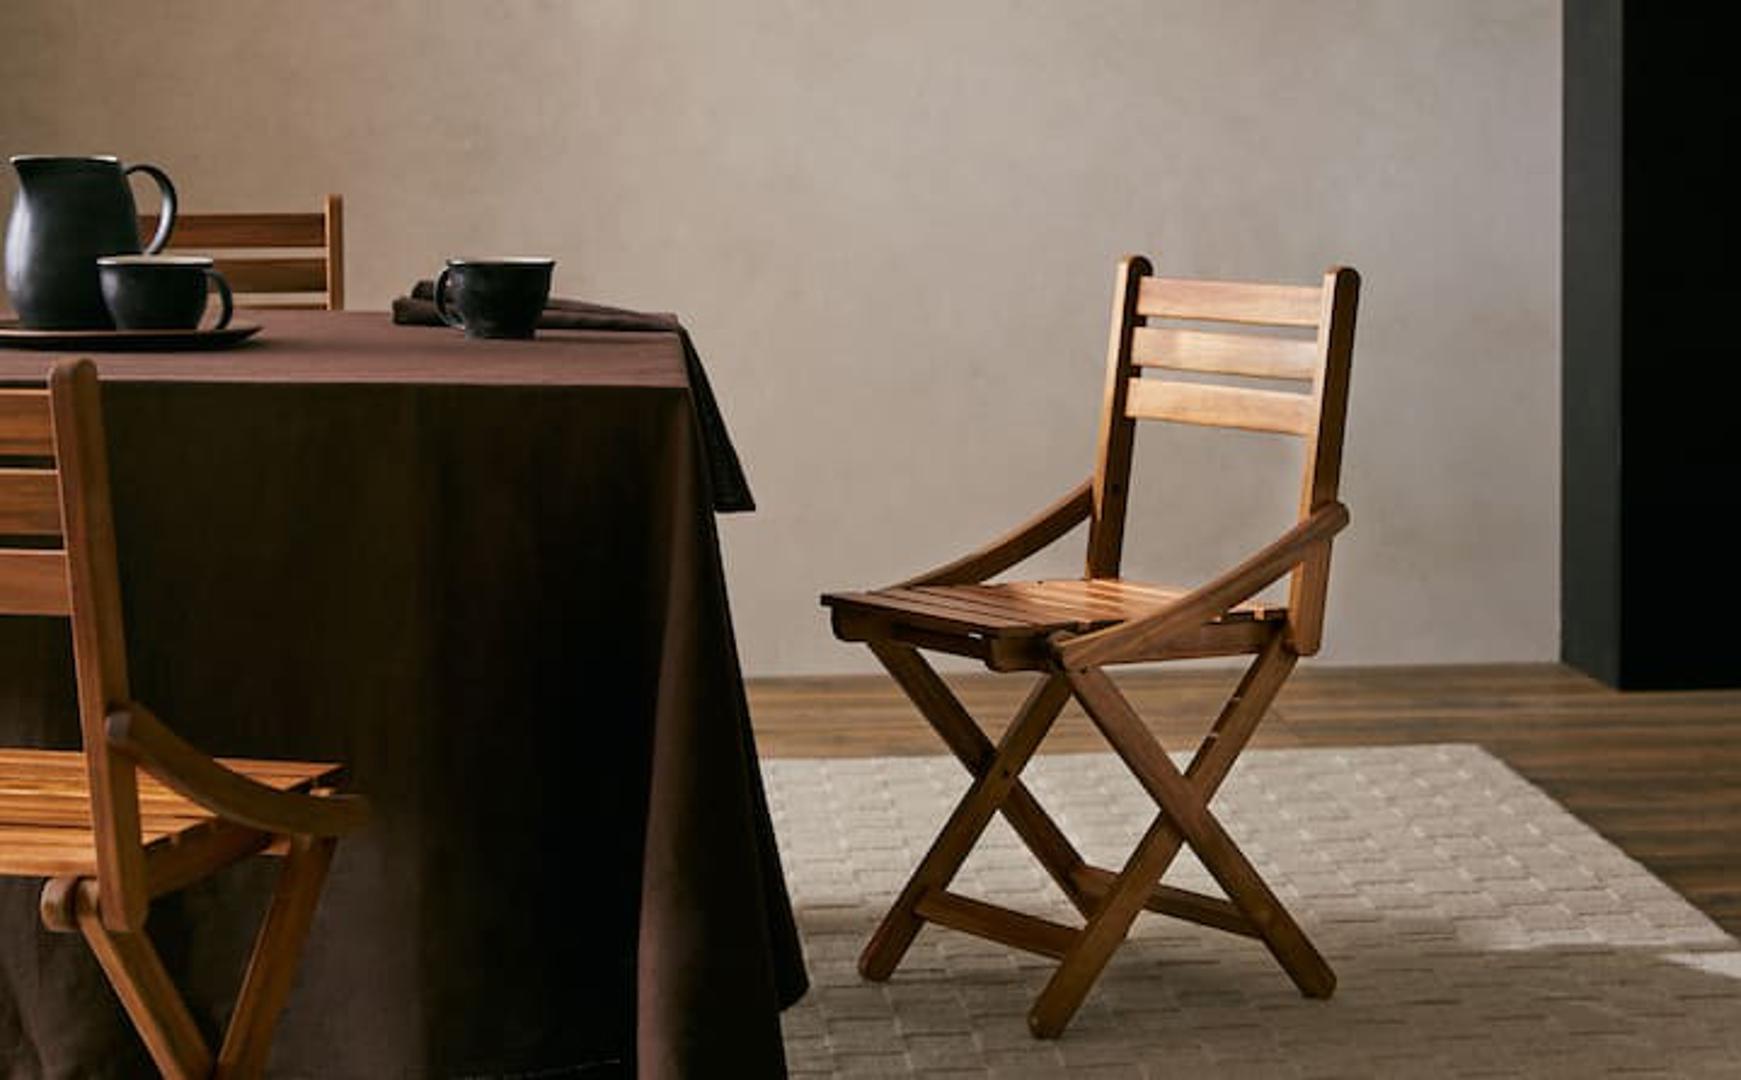 Drveni stolac iz nove kolekcije odličan je izbor, čak je cool izabrati samo jedan koji će prostoru dati karakter